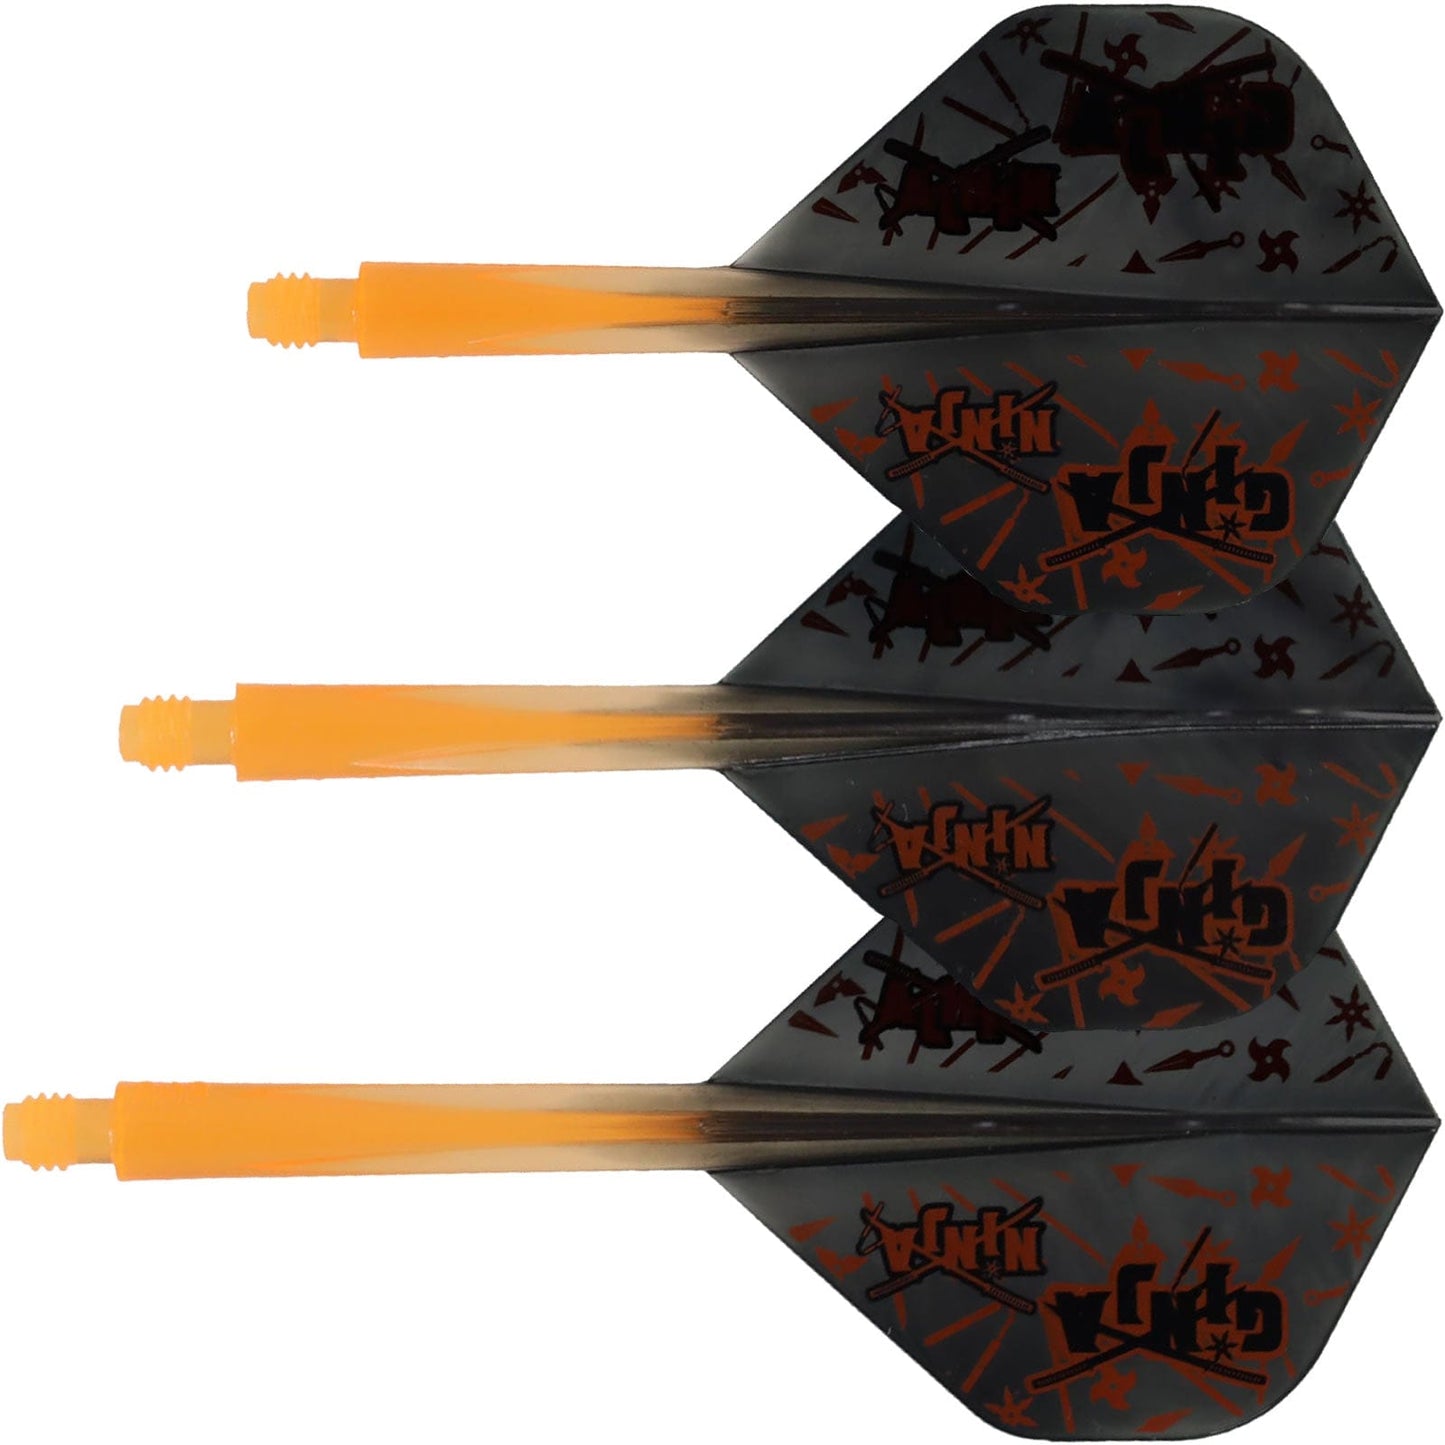 Condor AXE Dart Flights - Matt Campbell - Ginja Ninja - Standard - Black & Orange